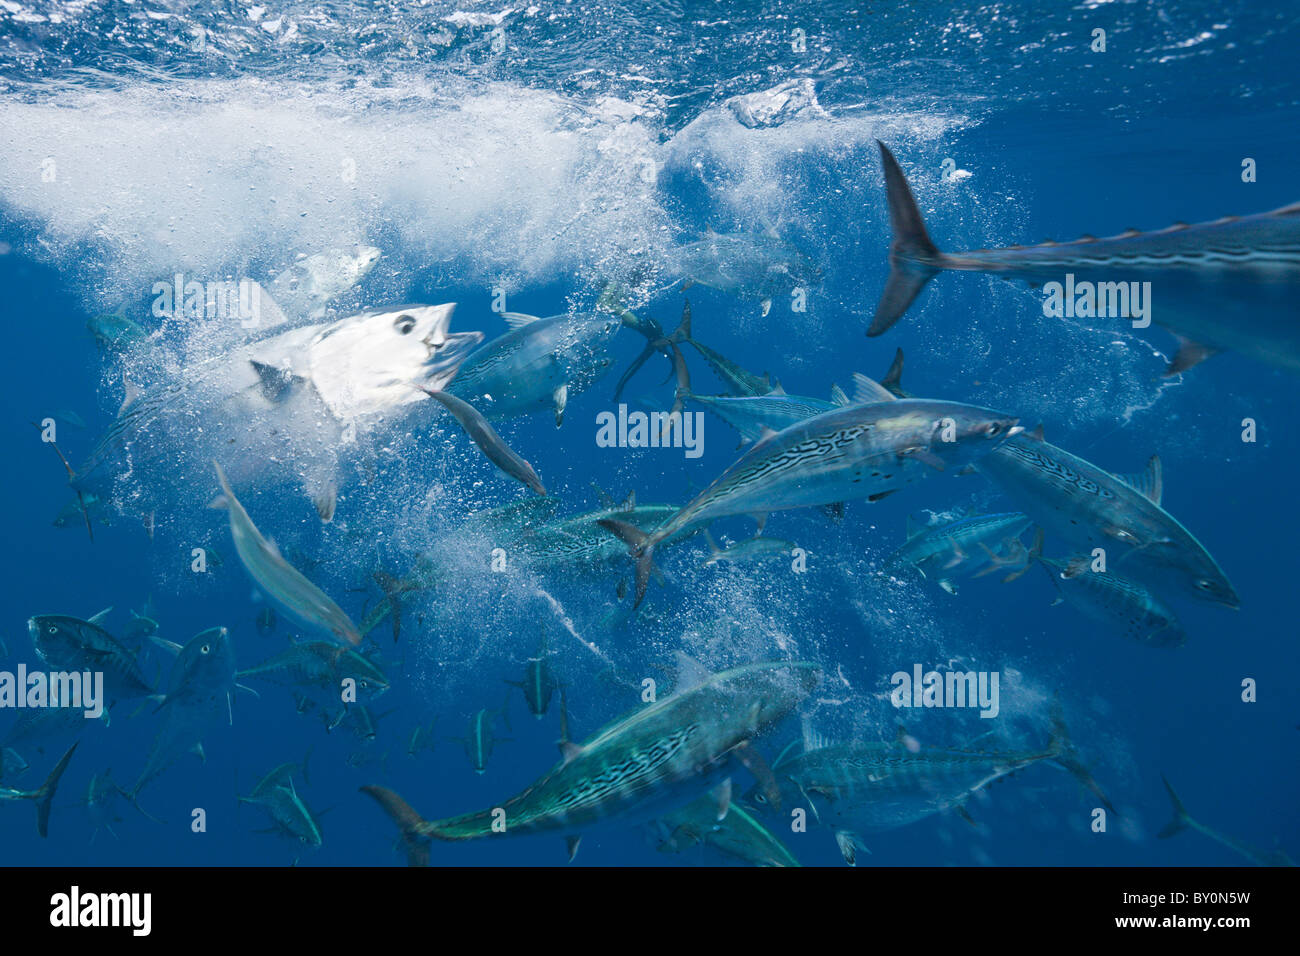 Bonitos hunting Sardines, Sarda sarda, Sardina pilchardus, Isla Mujeres, Yucatan Peninsula, Caribbean Sea, Mexico Stock Photo